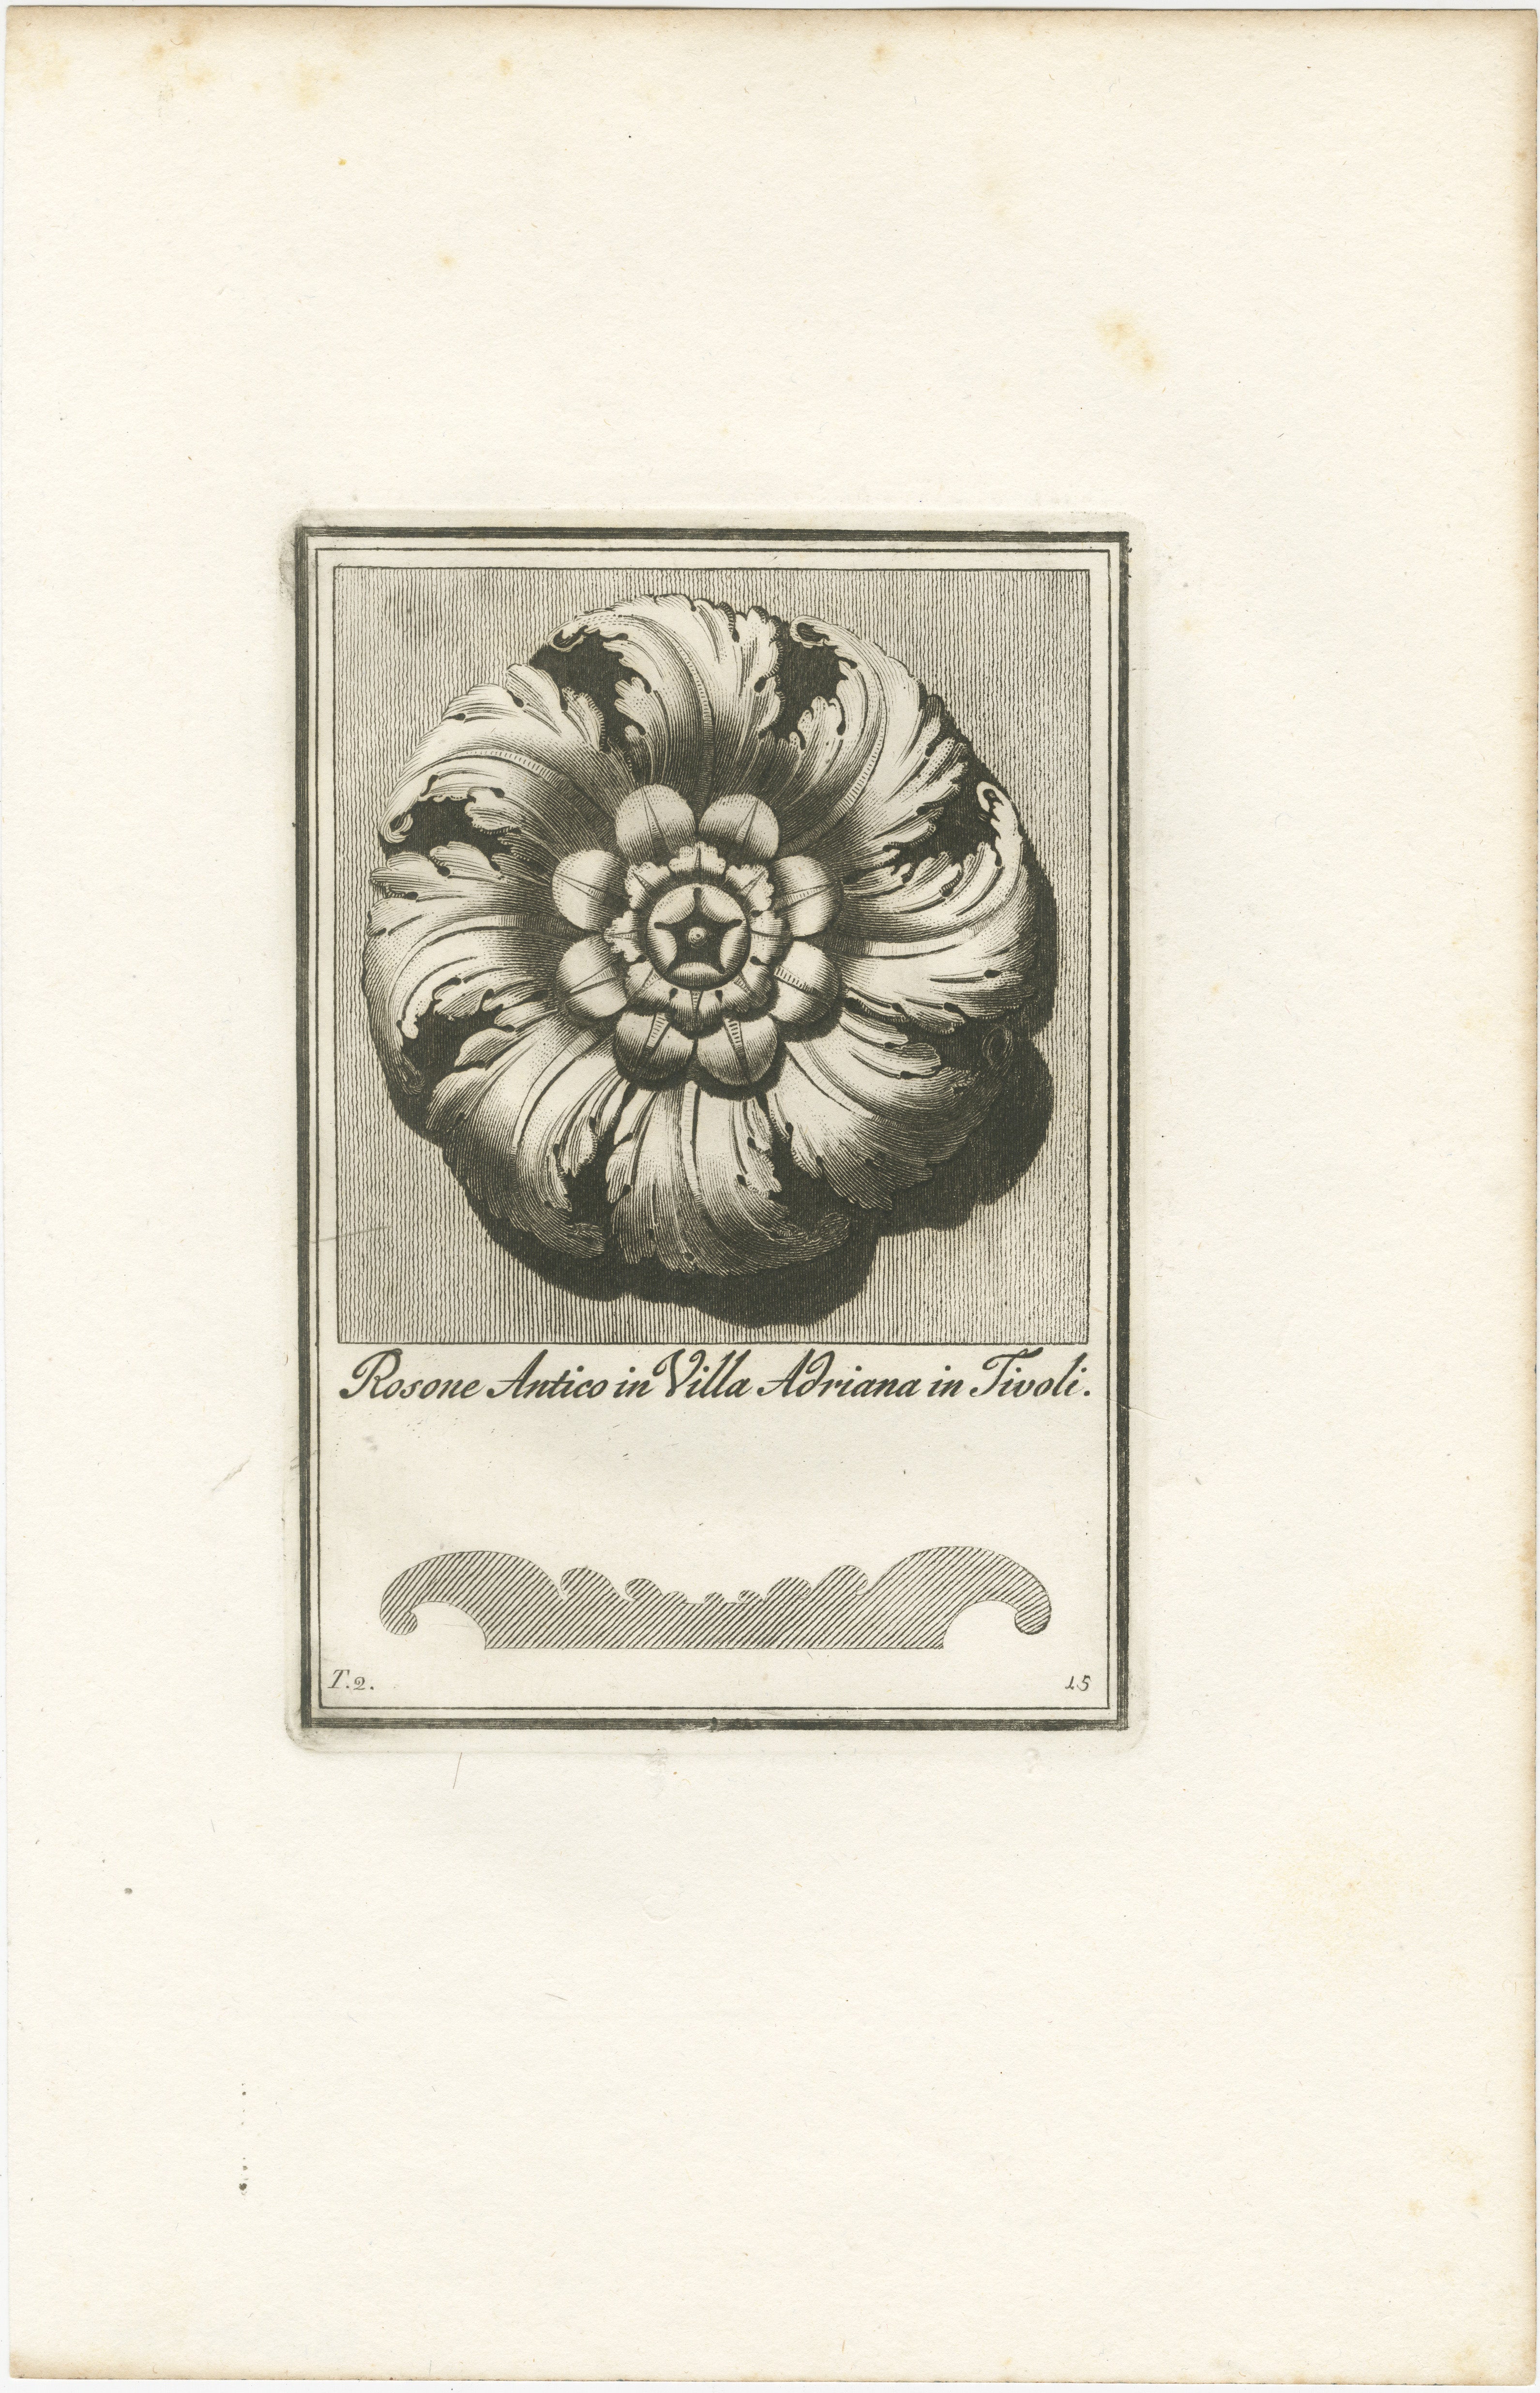 Cette élégante gravure de la fin du XVIIIe siècle présente une rosette, un motif ornemental ressemblant à une rose stylisée, qui a été un motif récurrent dans la conception architecturale à travers les âges. 

Titre : 